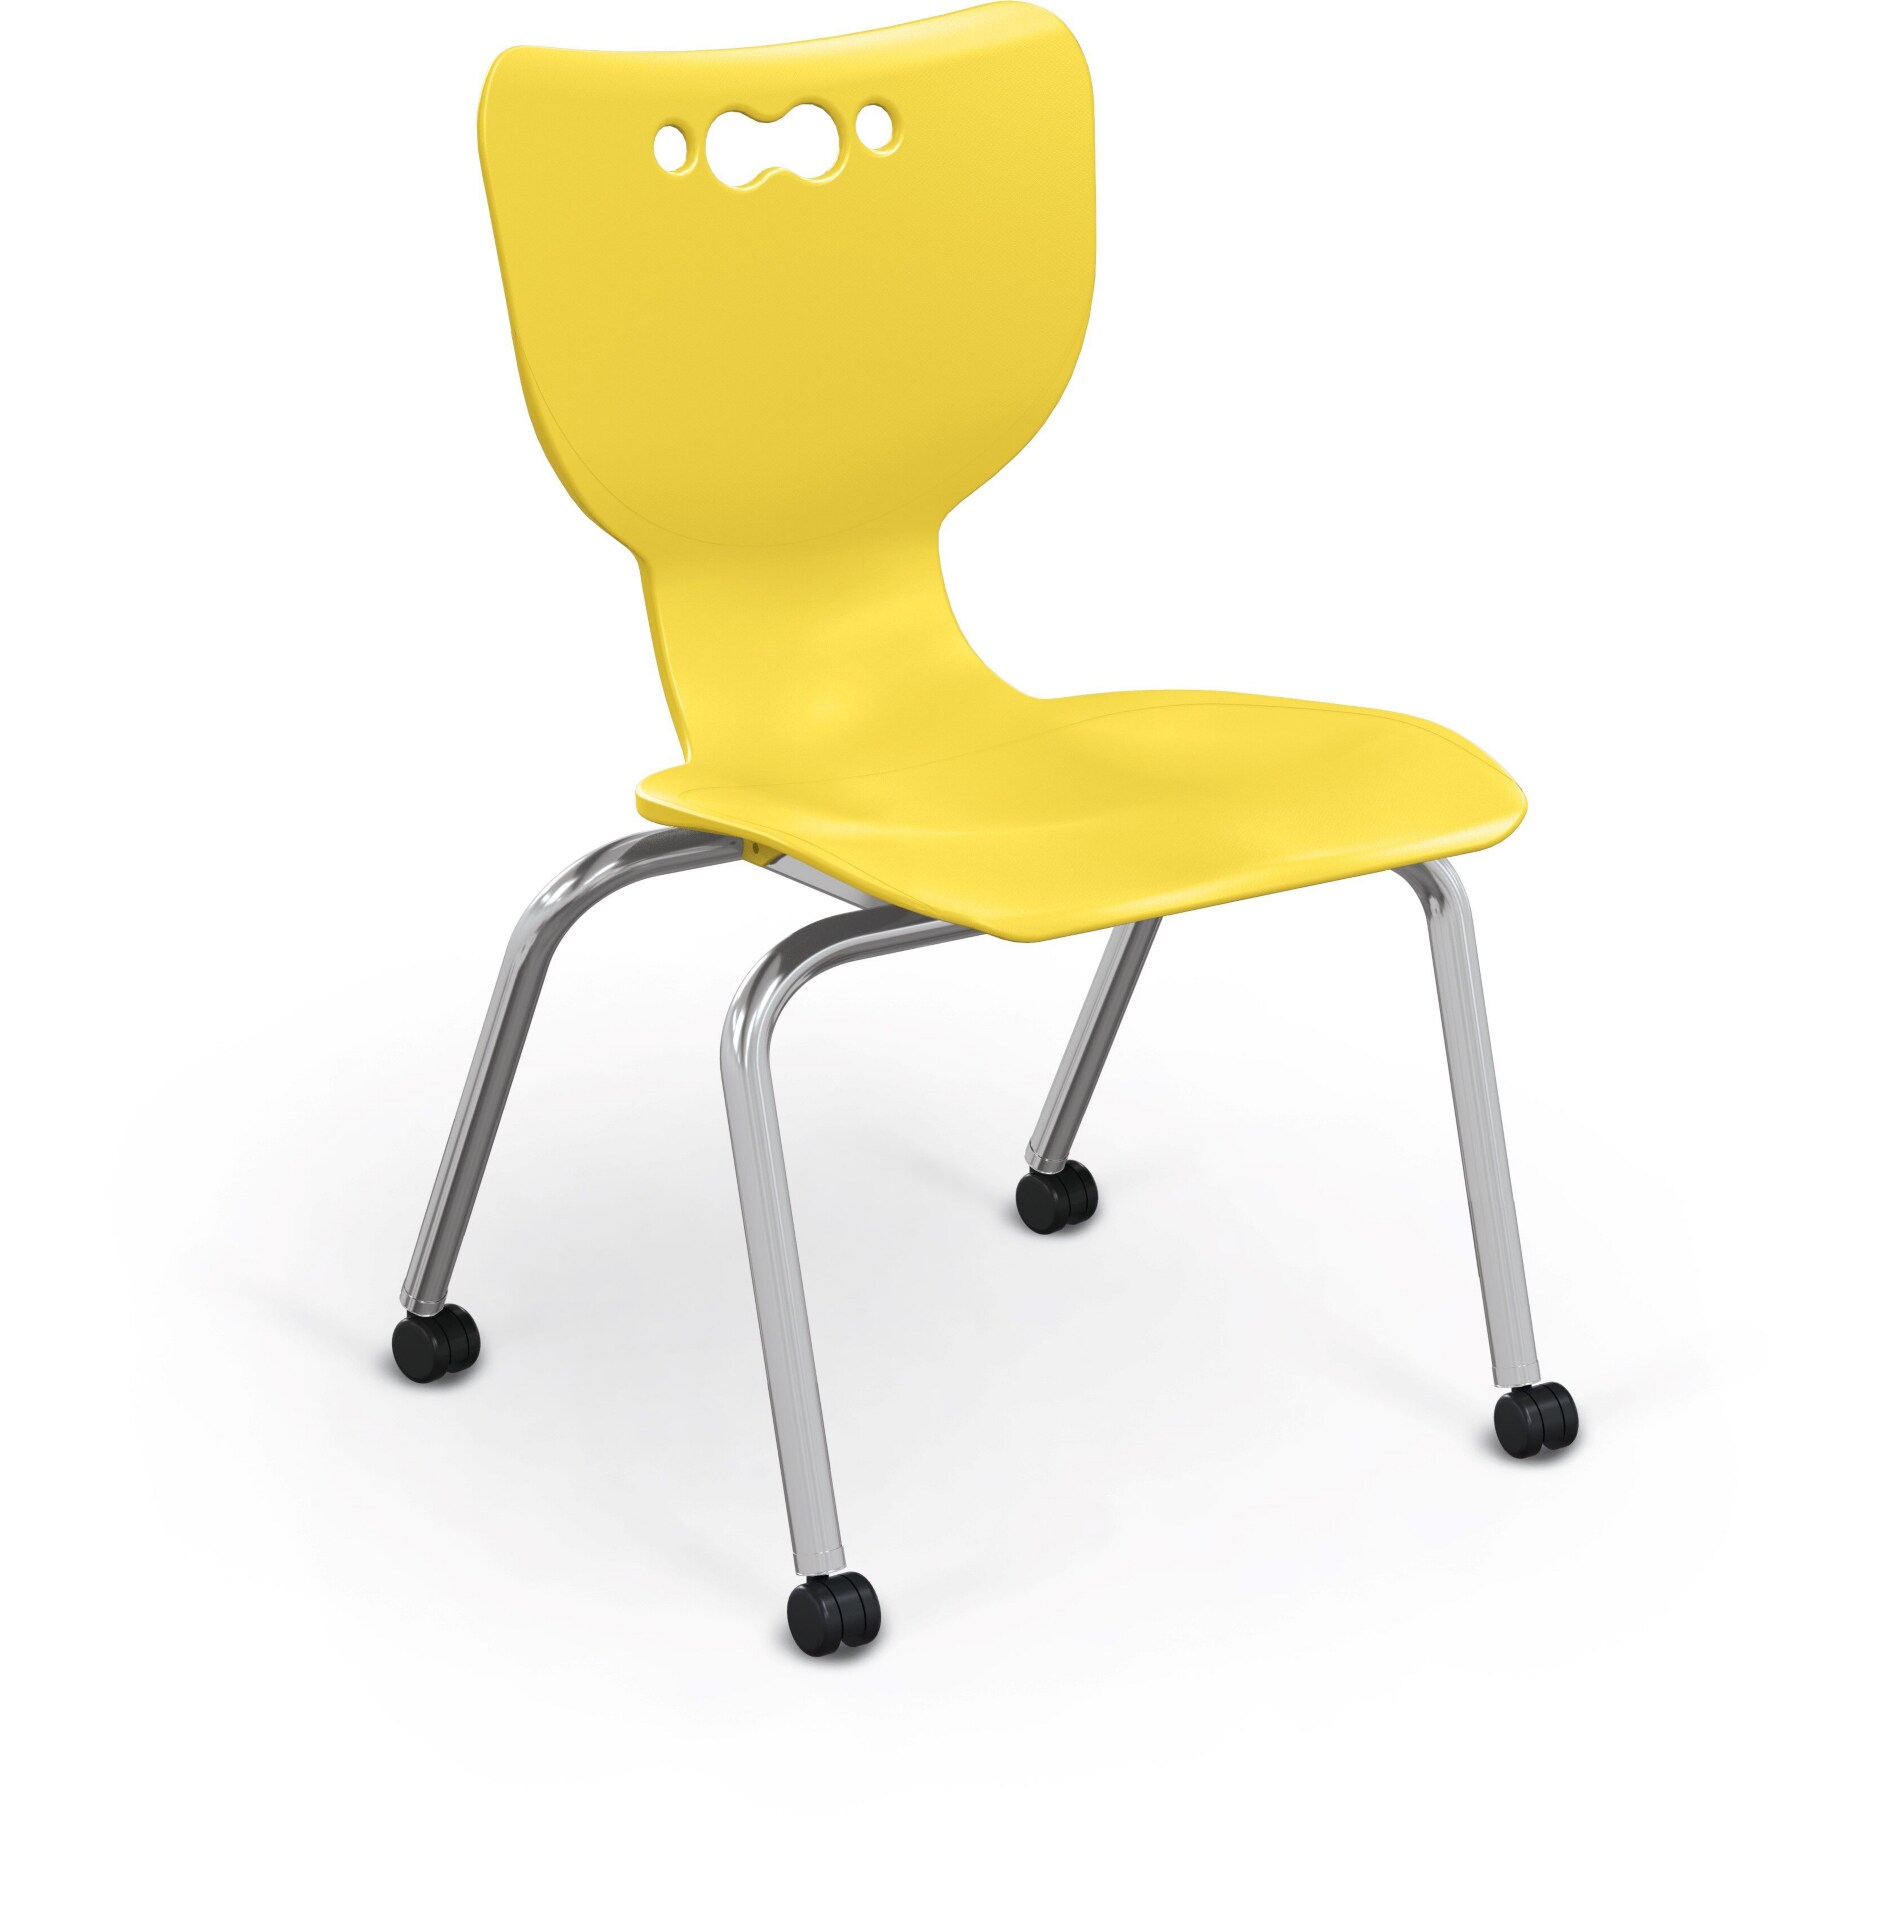 Balt 16" Hierarchy 4 Leg Caster Chair - Yellow